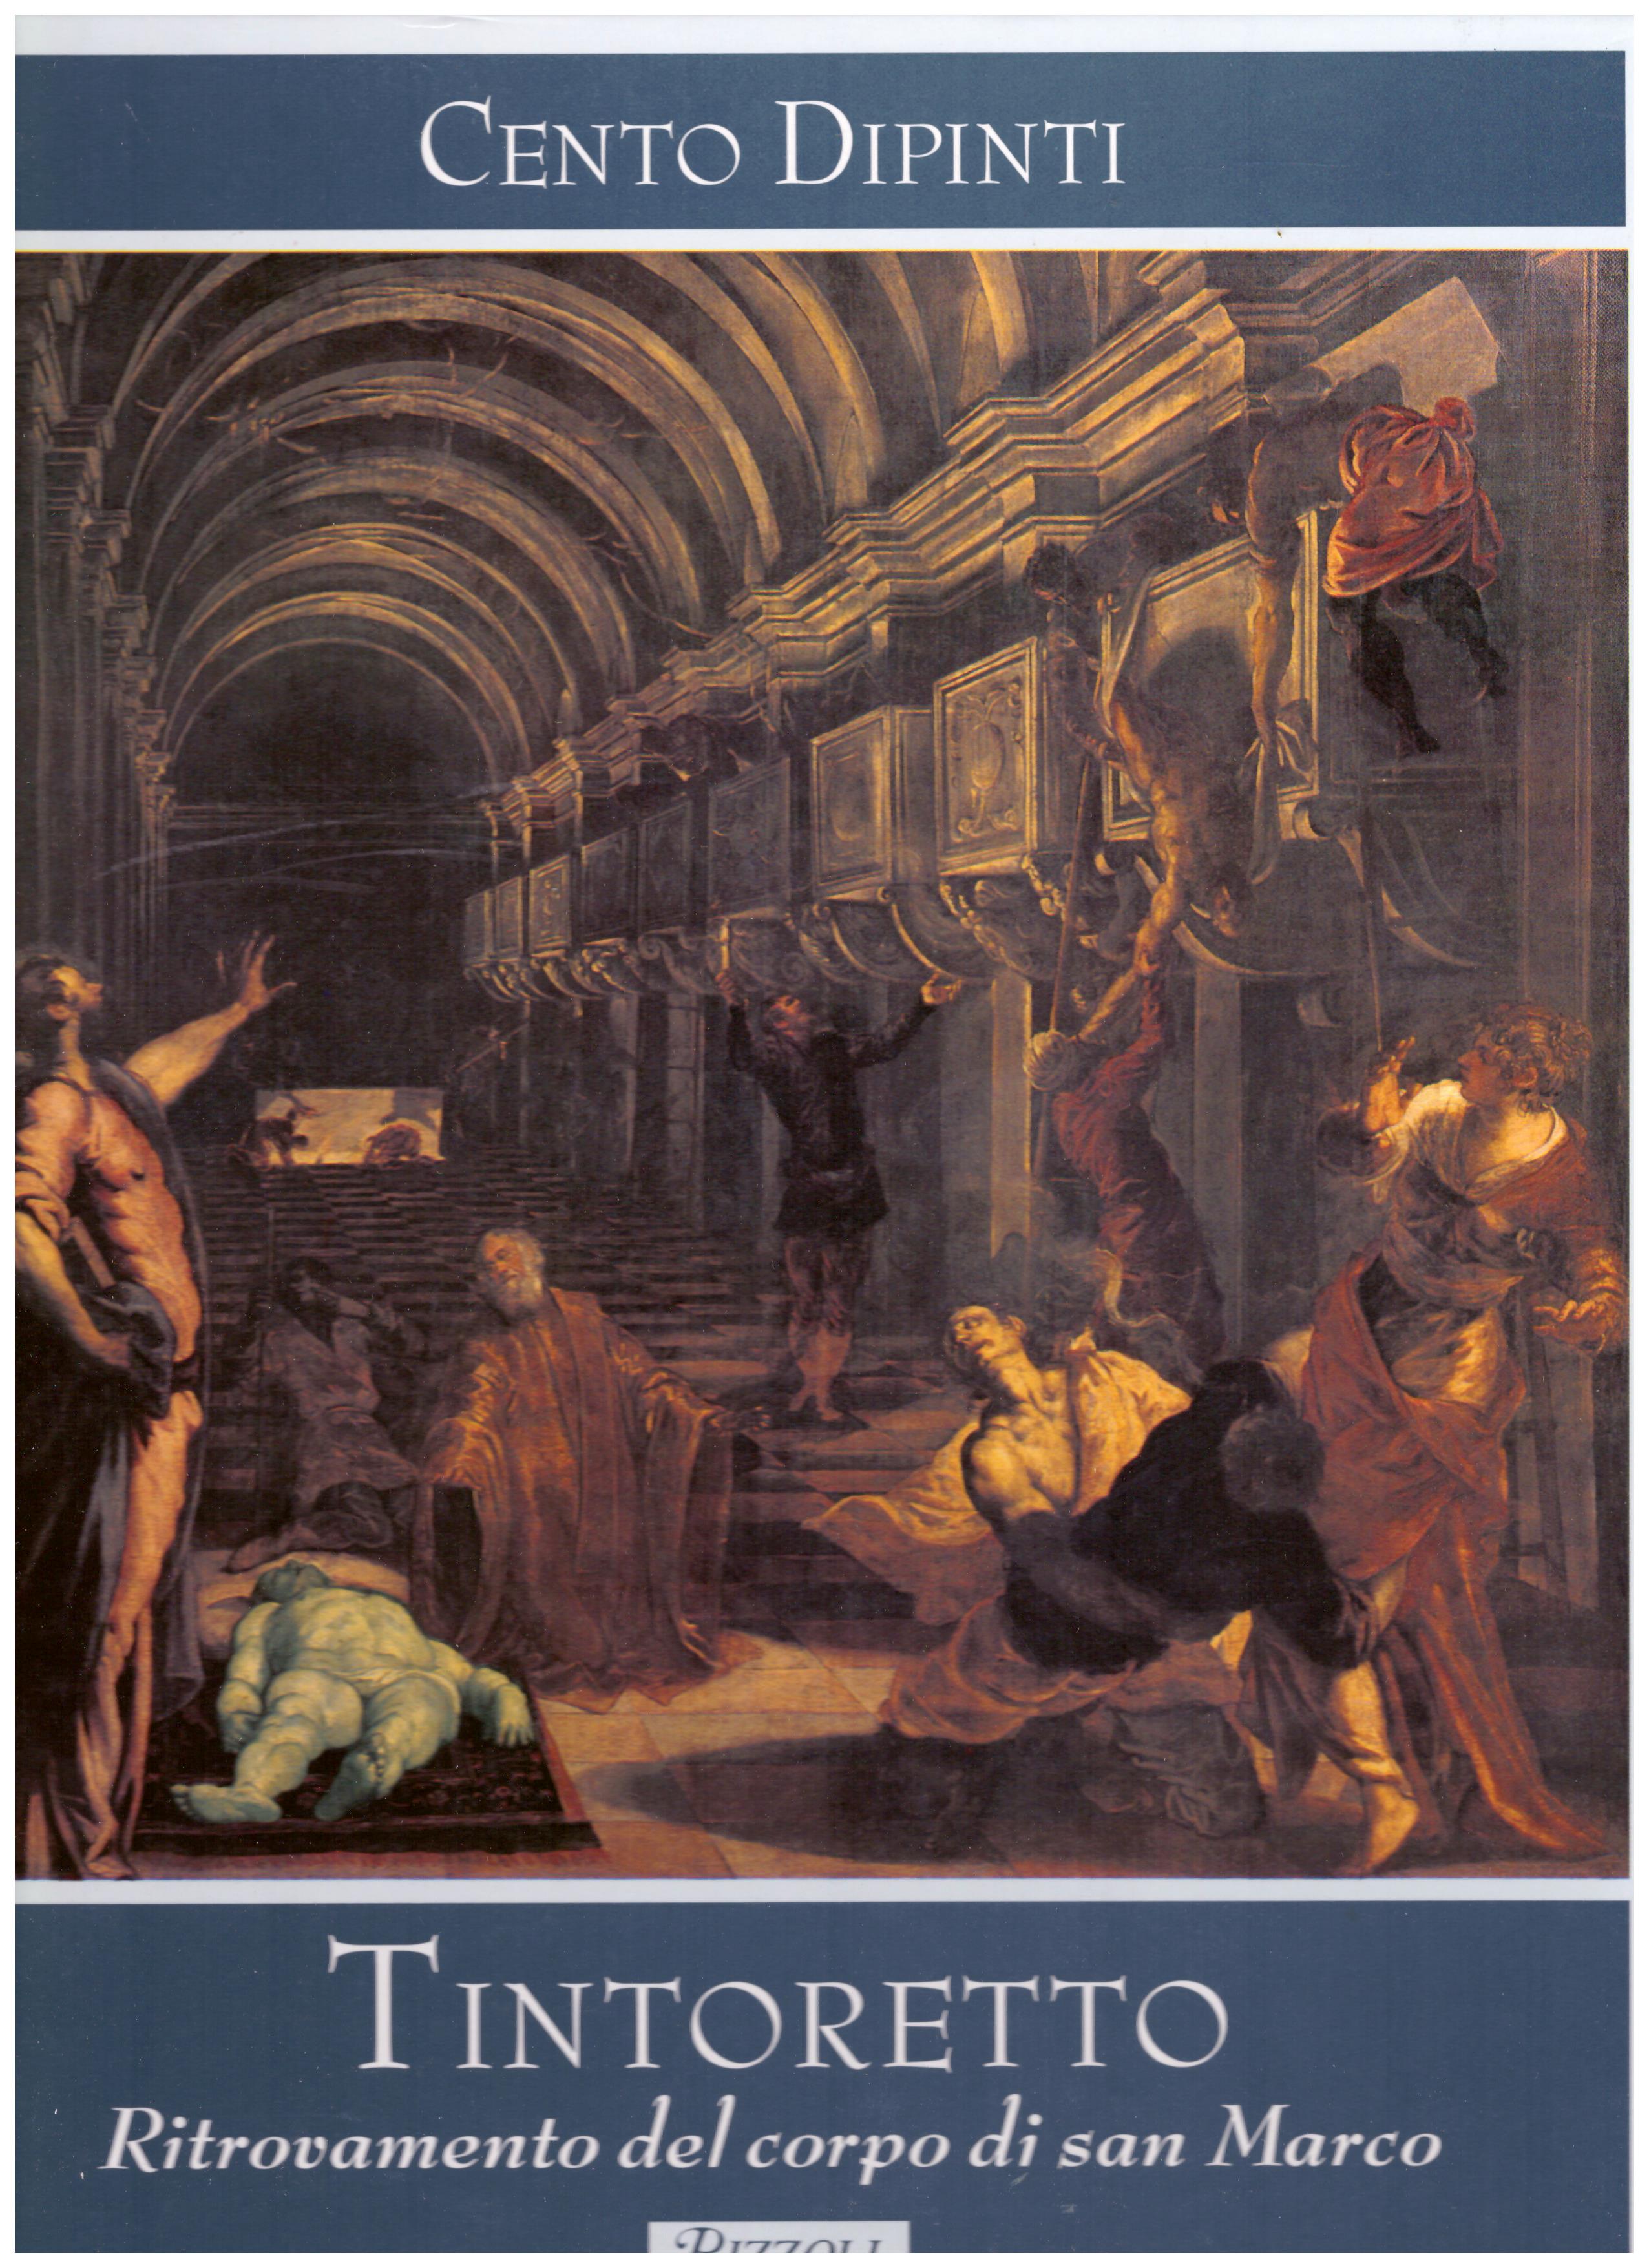 Titolo: Cento Dipinti, Tintoretto, Ritrovamento del corpo di San Marco Autore : AA.VV.  Editore: Rizzoli